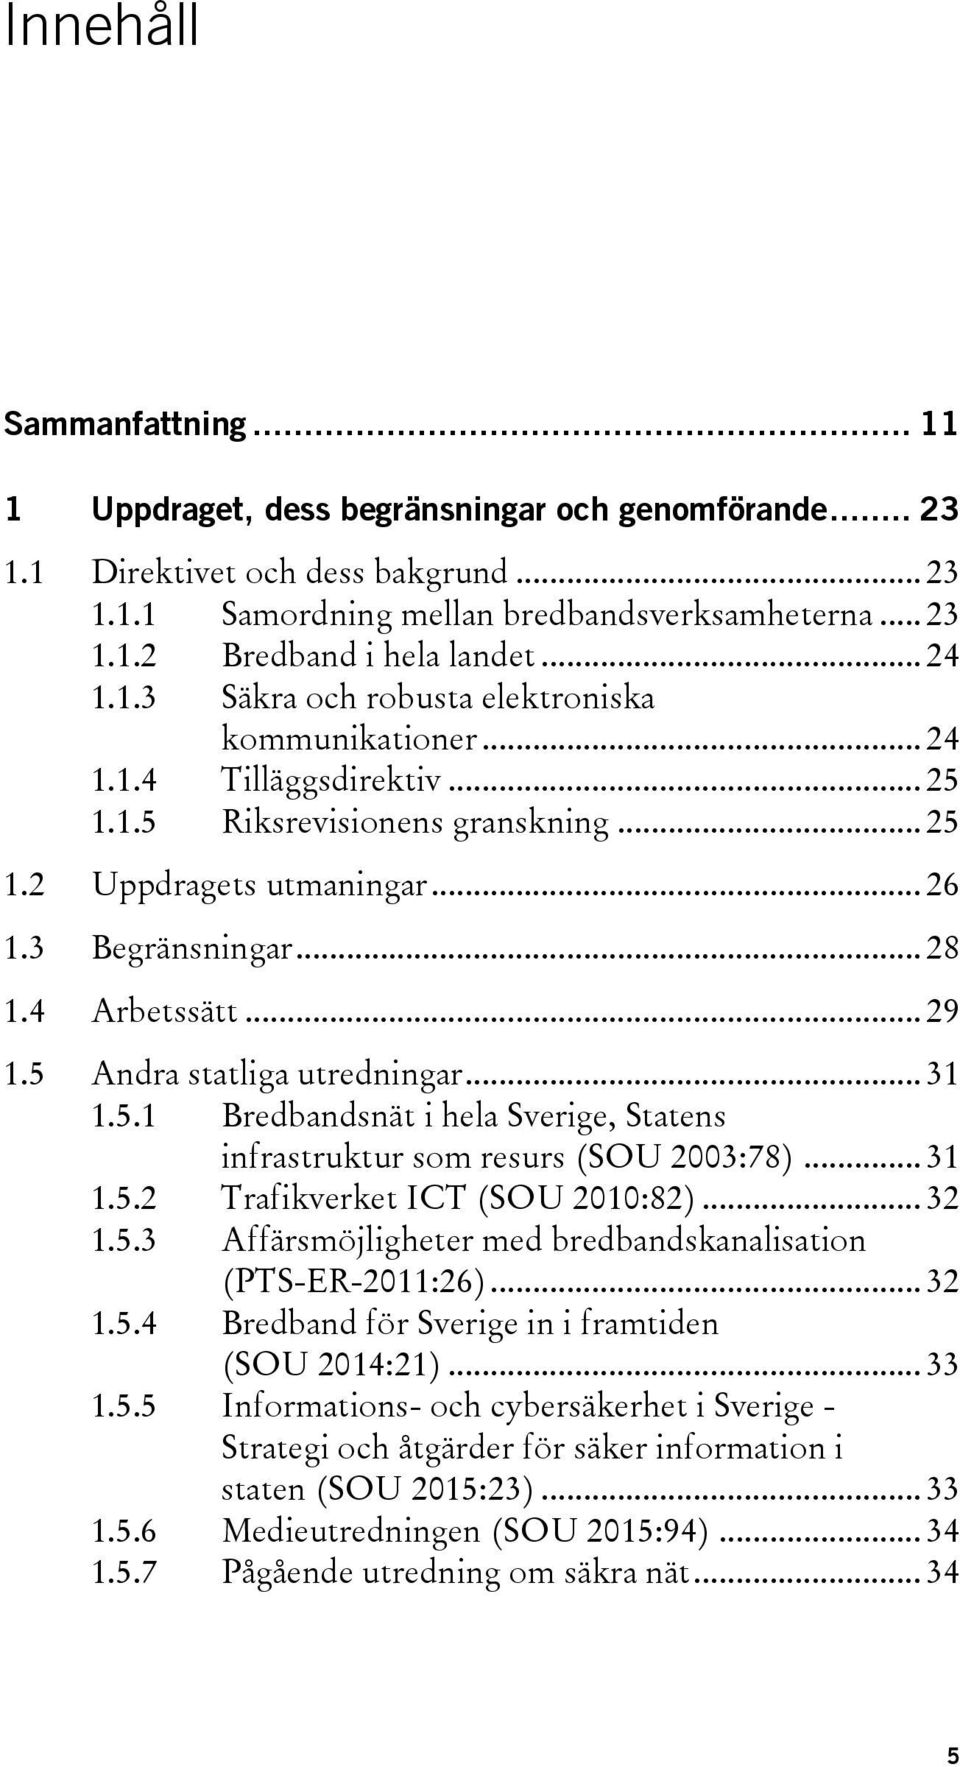 4 Arbetssätt... 29 1.5 Andra statliga utredningar... 31 1.5.1 Bredbandsnät i hela Sverige, Statens infrastruktur som resurs (SOU 2003:78)... 31 1.5.2 Trafikverket ICT (SOU 2010:82)... 32 1.5.3 Affärsmöjligheter med bredbandskanalisation (PTS-ER-2011:26).